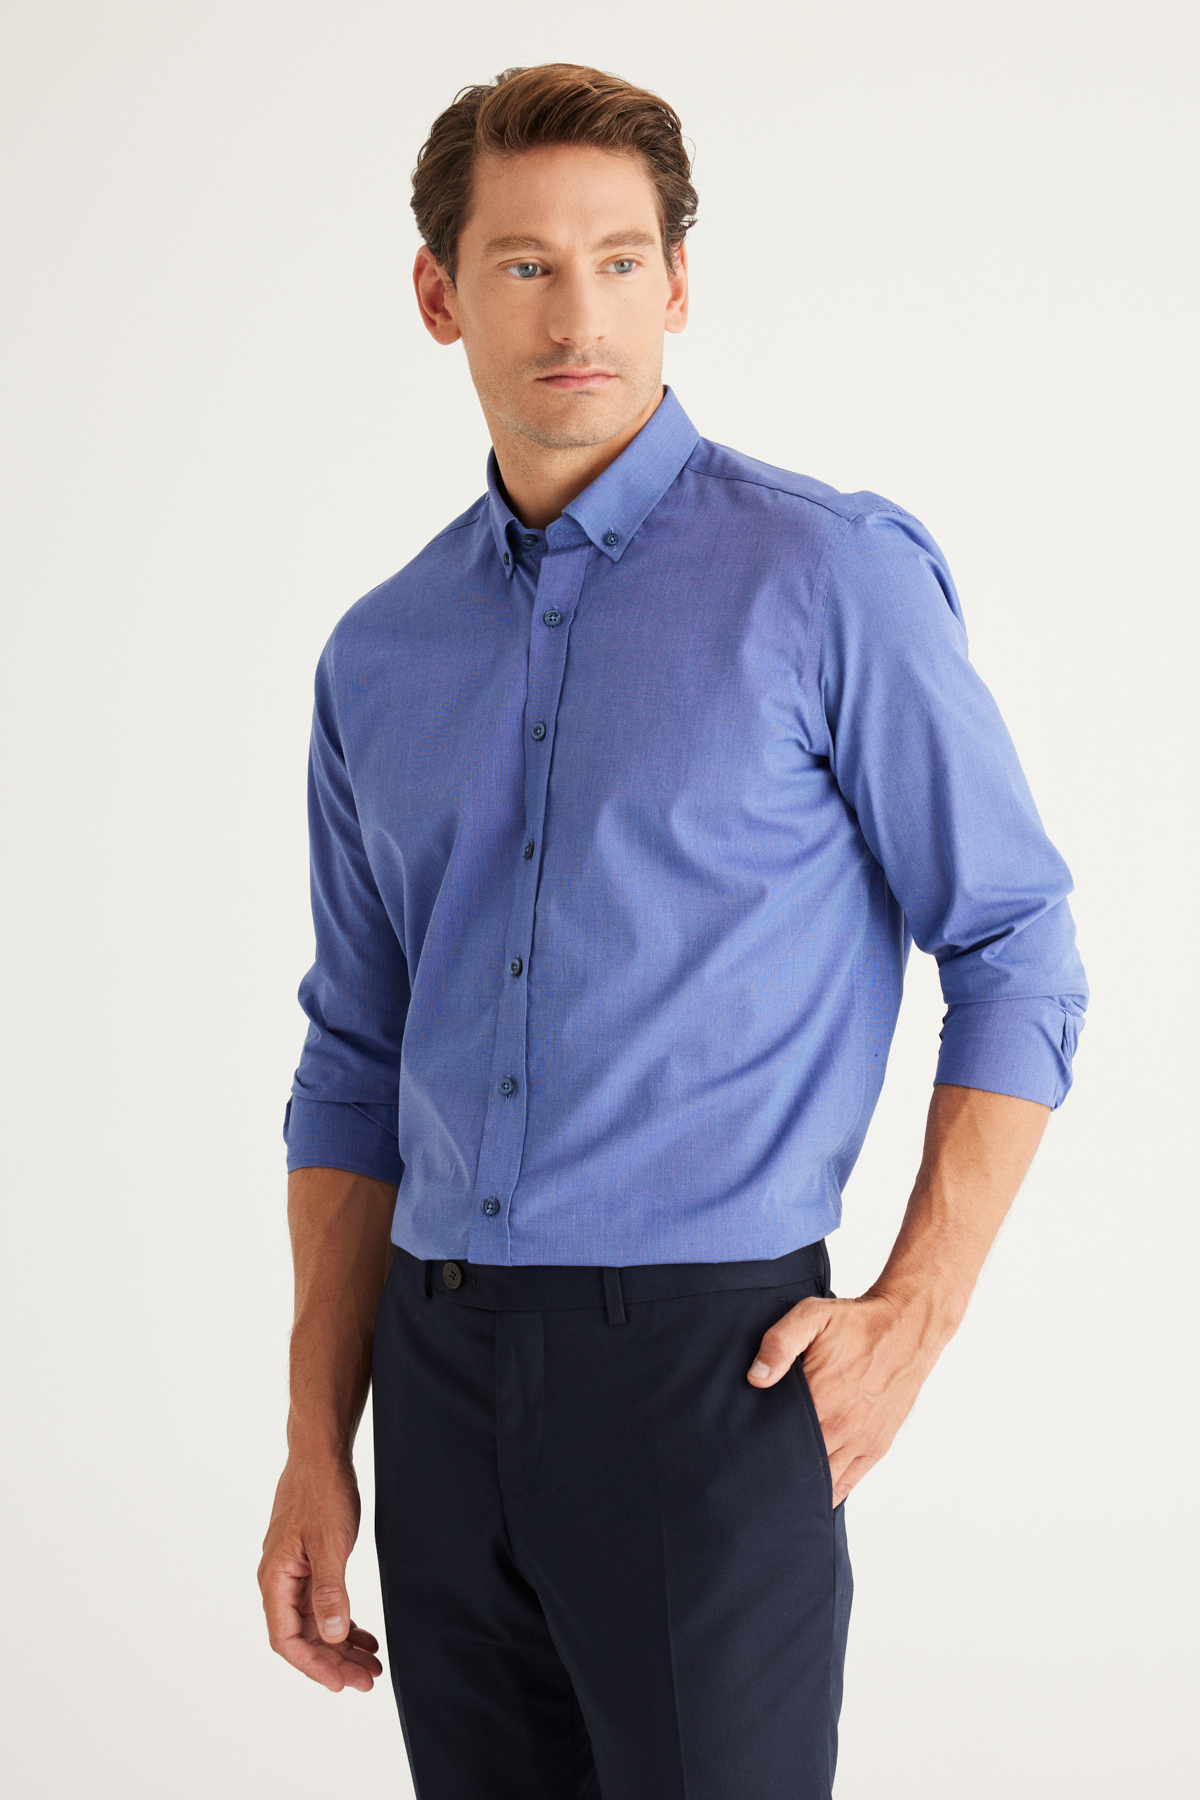 Levně ALTINYILDIZ CLASSICS Men's Navy Blue Slim Fit Slim Fit Shirt with Buttons Collar Patterned